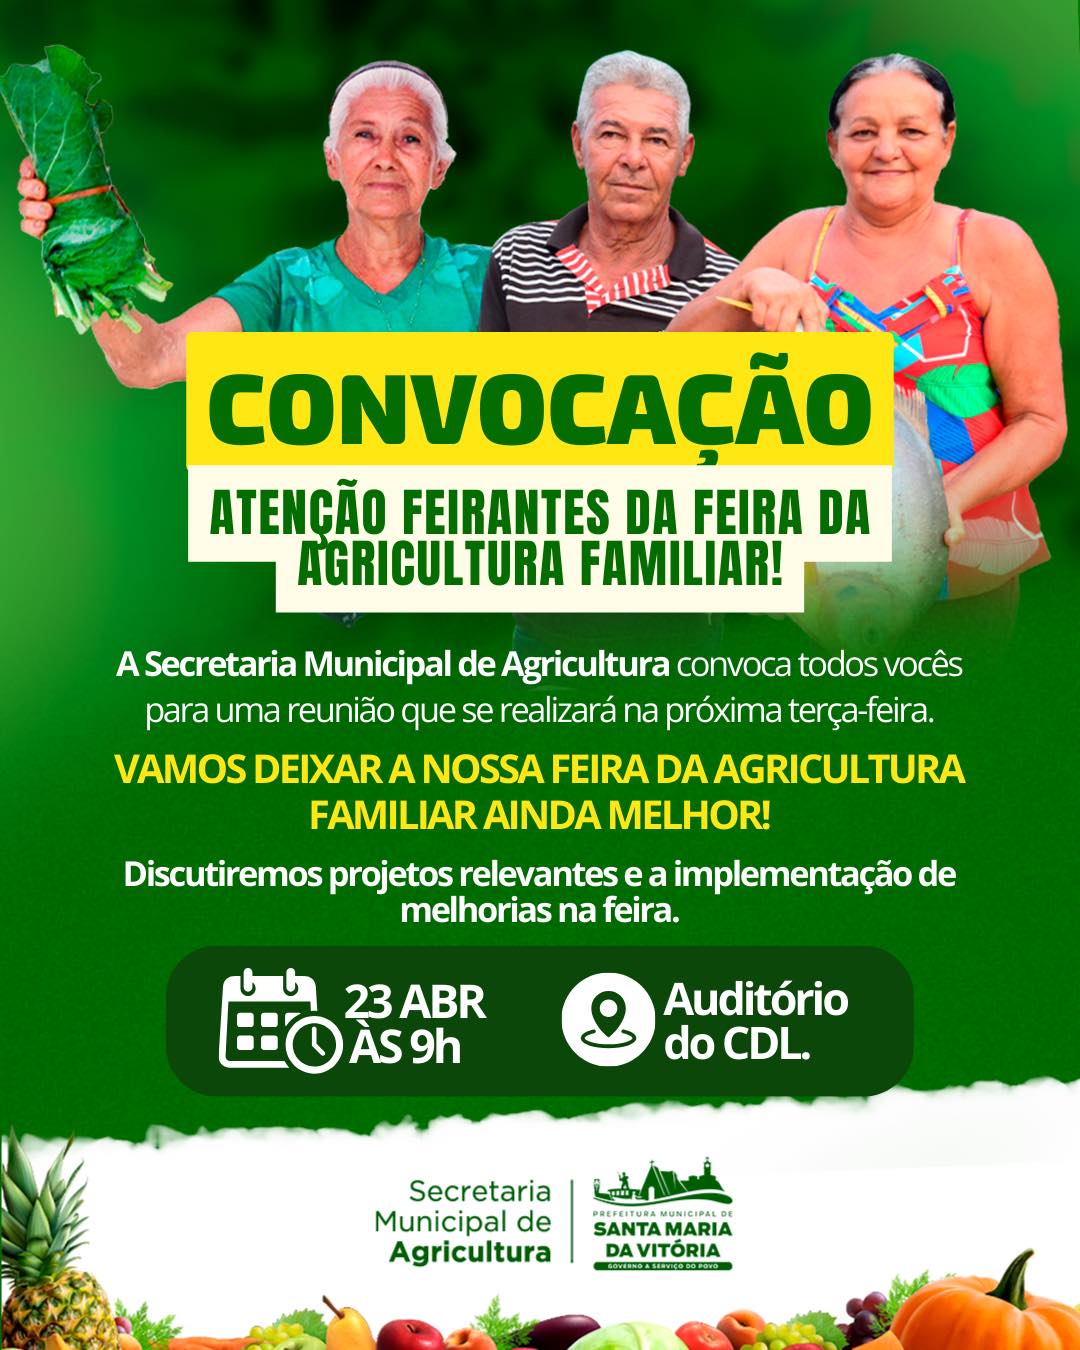 A Secretaria Municipal de Agricultura convoca todos os feirantes da Feira de Agricultura Familiar para uma reunião que se realizará na próxima terça-feira.